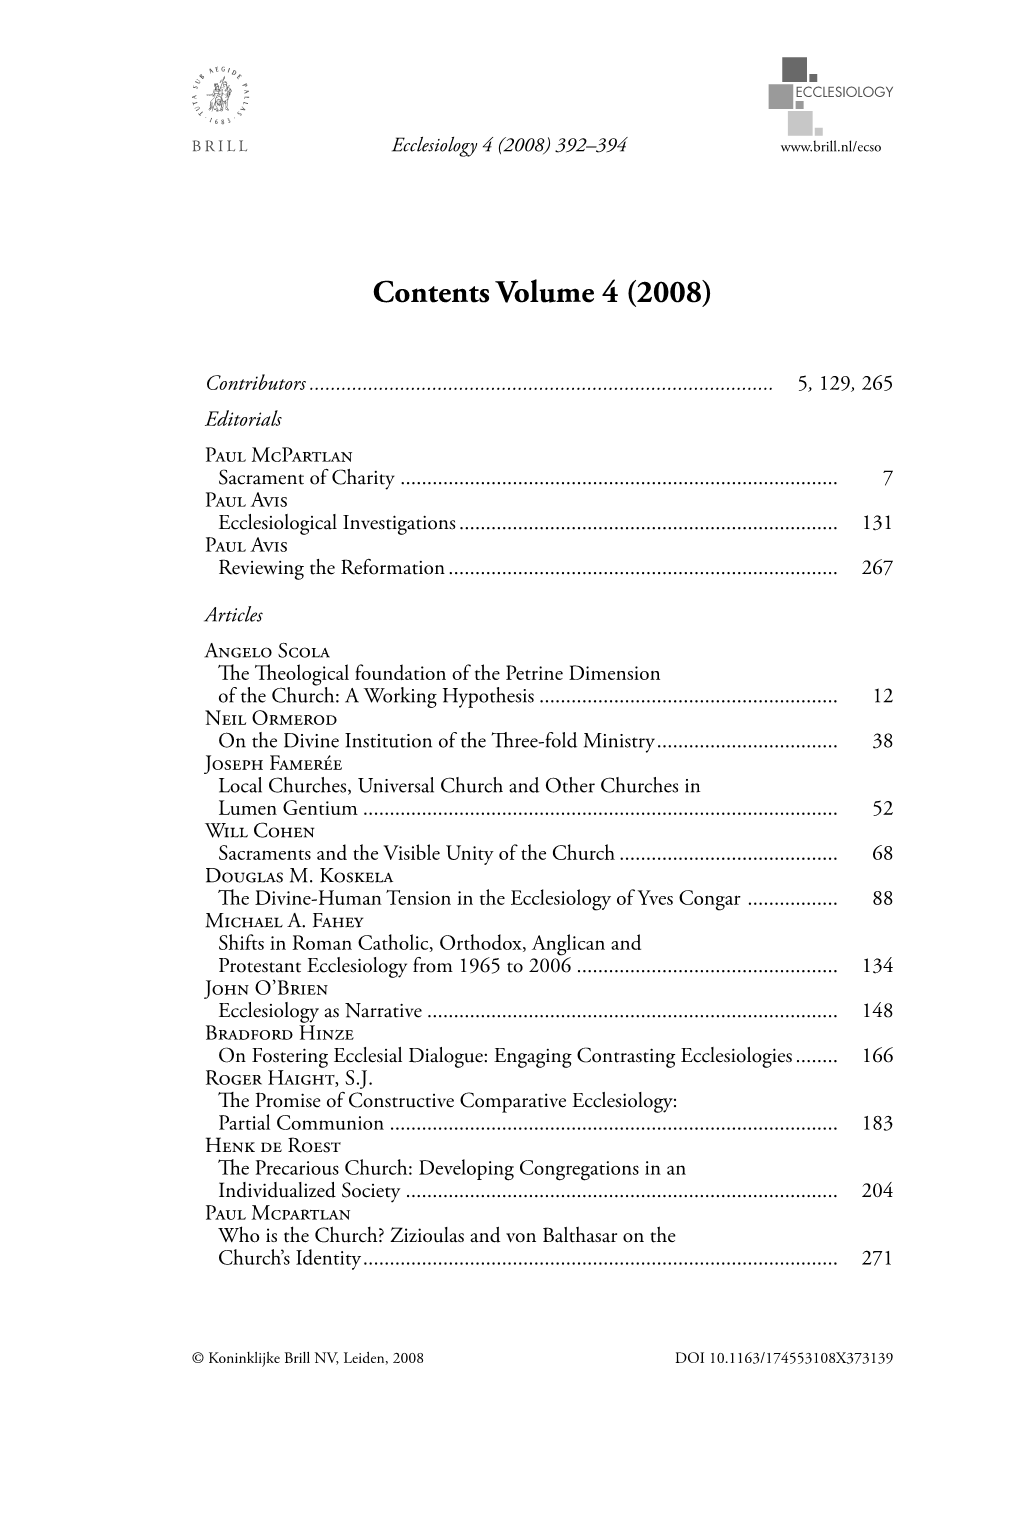 Contents Volume 4 (2008)